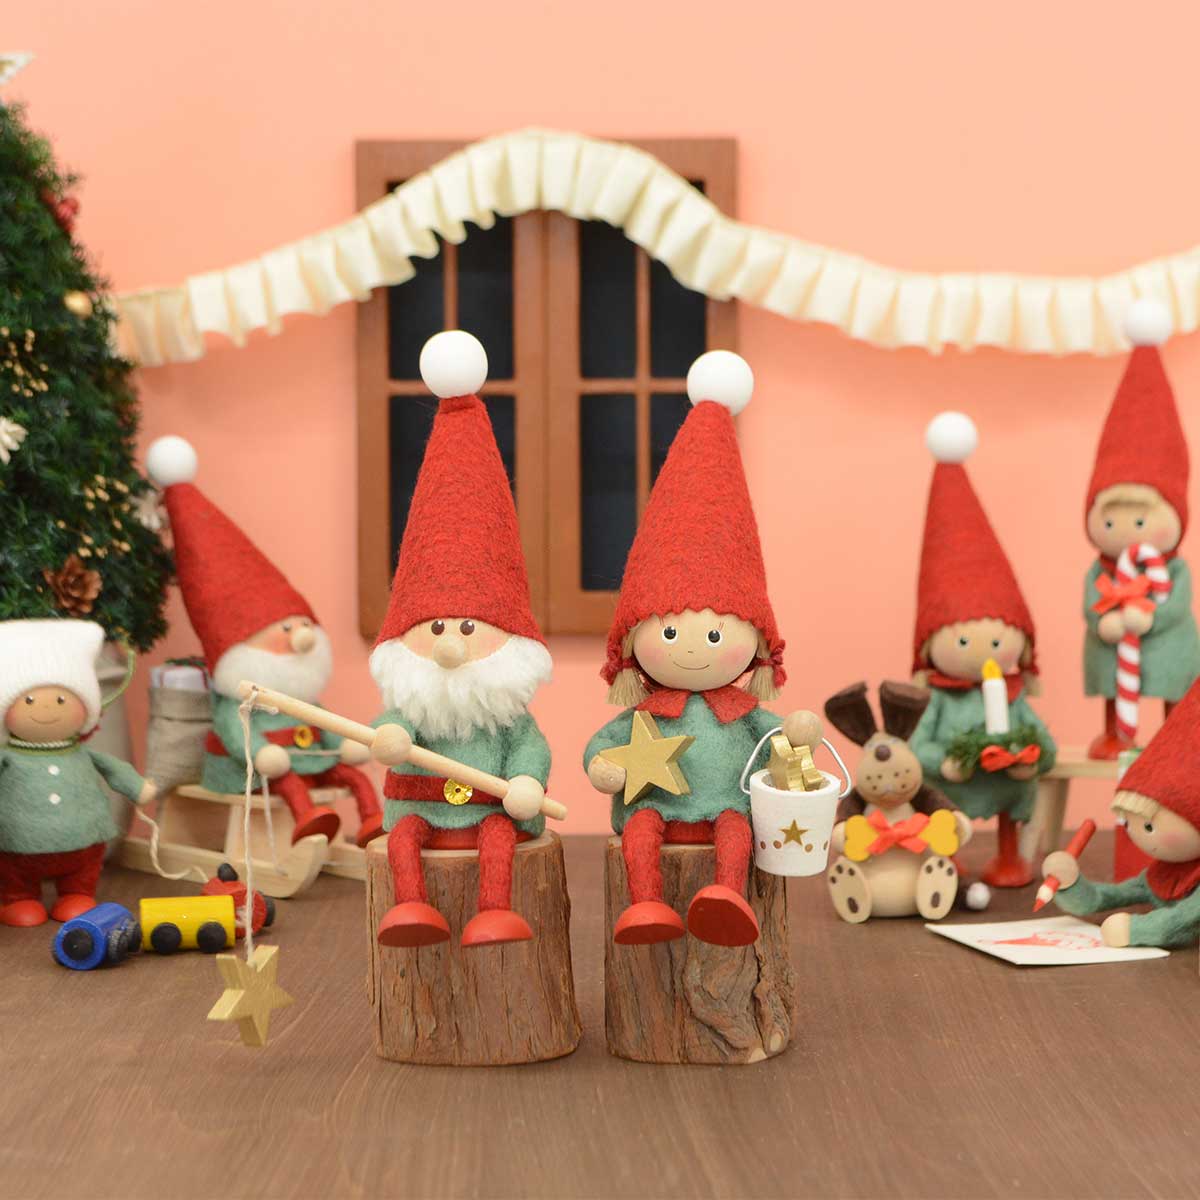 【北欧雑貨オリジナル】NORDIKA nisse ノルディカ ニッセ クリスマス 木製人形 ( 星をあつめるニッセ )